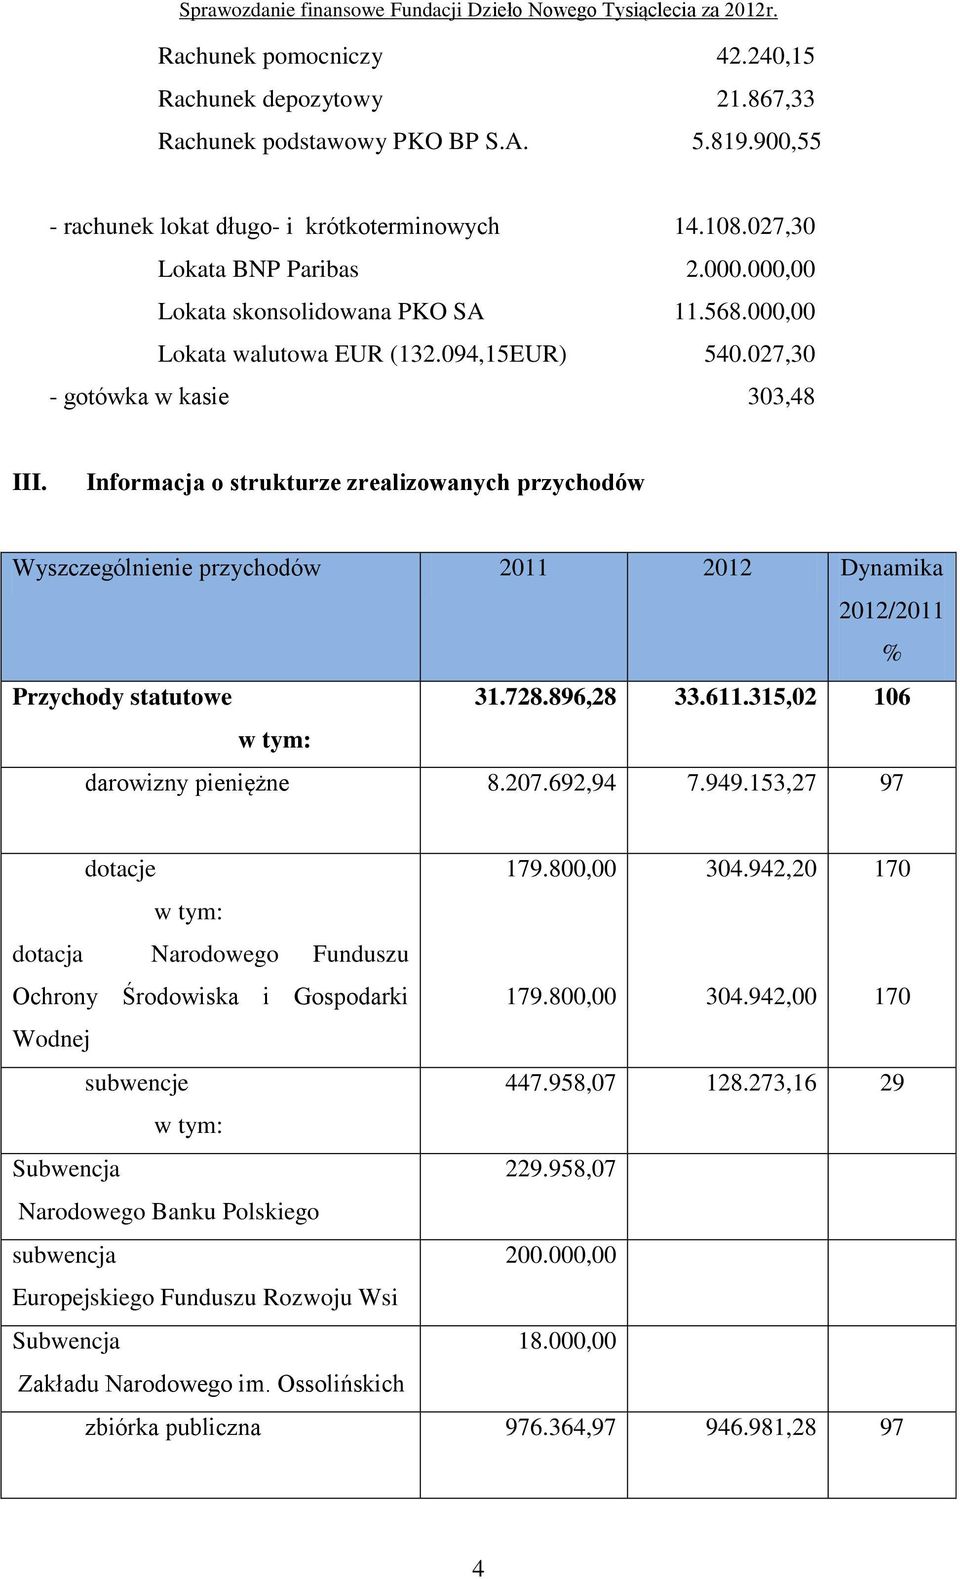 Informacja o strukturze zrealizowanych przychodów Wyszczególnienie przychodów 2011 2012 Dynamika 2012/2011 % Przychody statutowe 31.728.896,28 33.611.315,02 106 w tym: darowizny pieniężne 8.207.